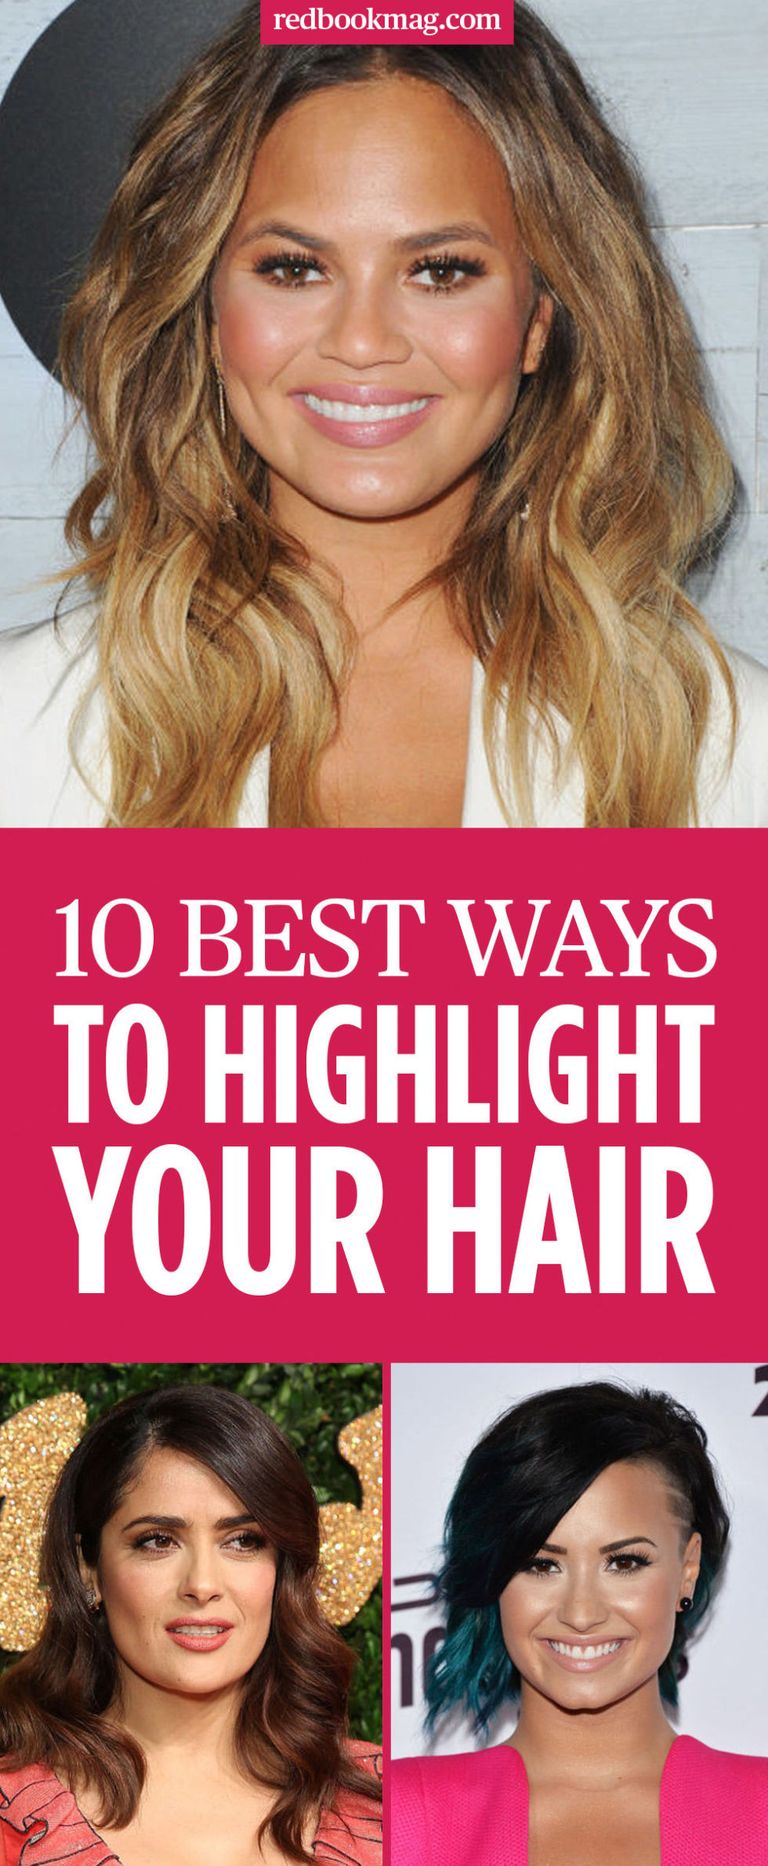 10 Hair Highlight Ideas For 2016 Trendy Ways To Highlight Your Hair 6775